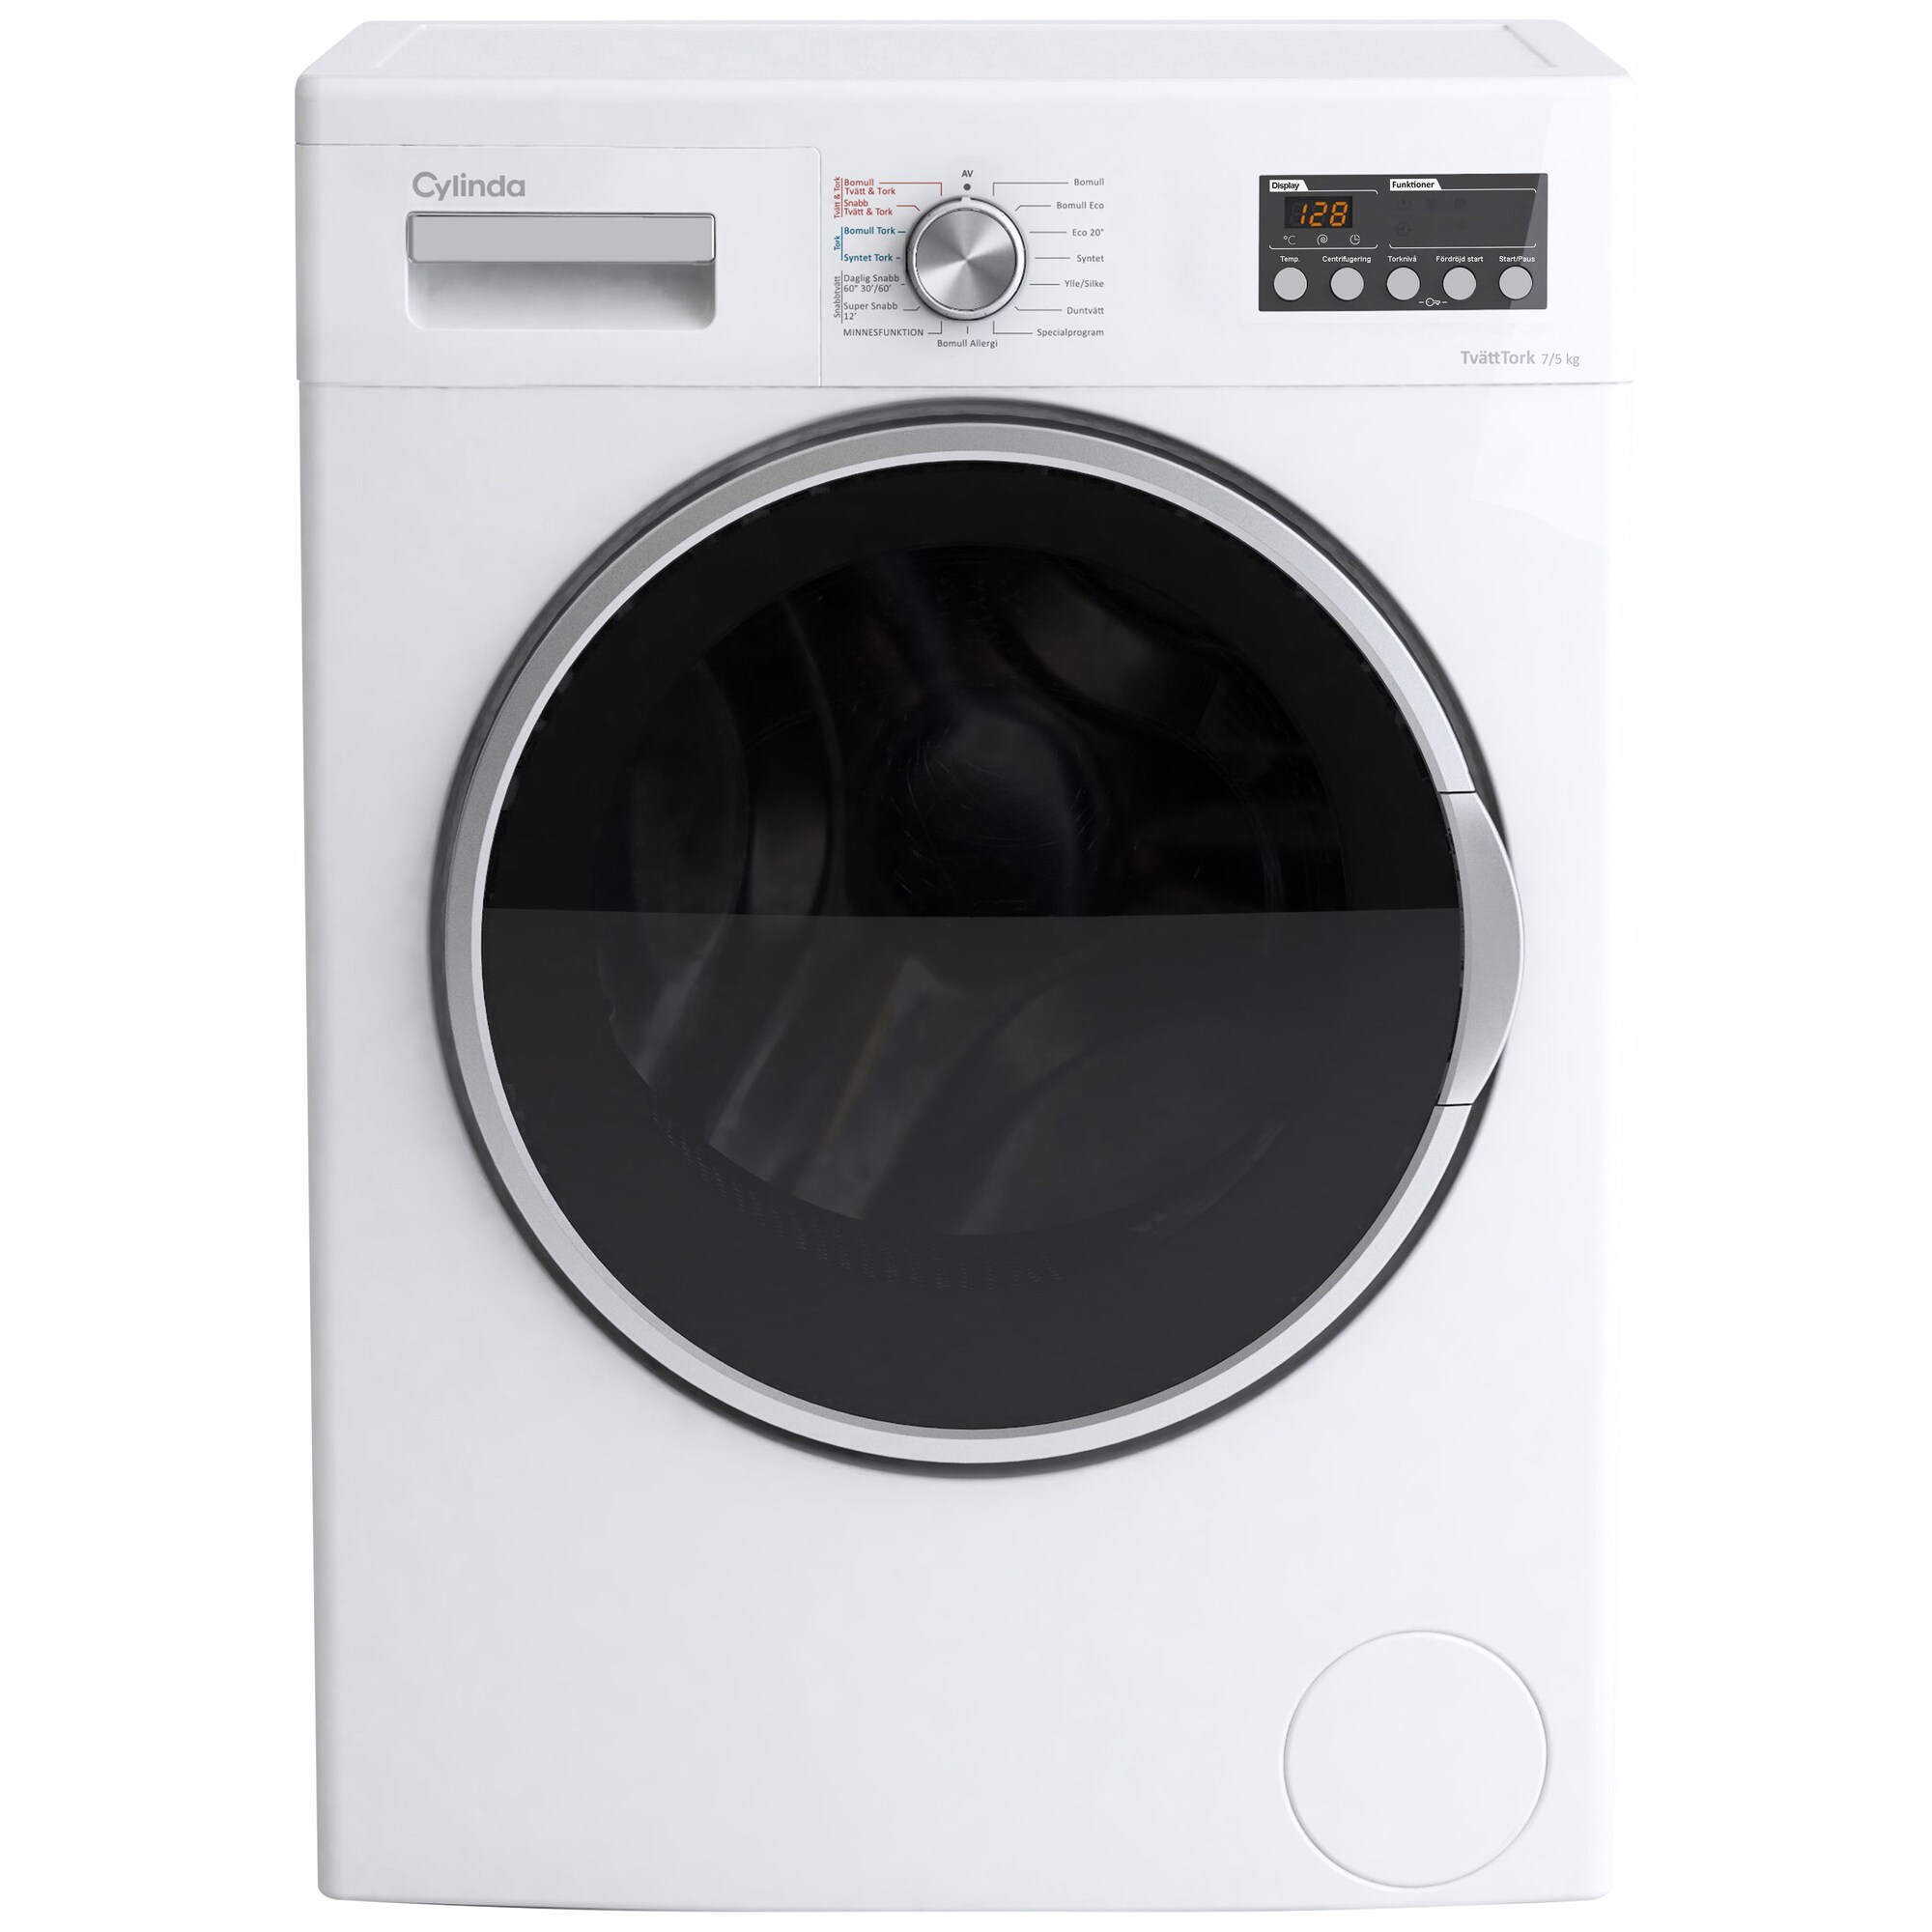 Hur bra är en kombinerad tvättmaskin och torktumlare? - Elgiganten